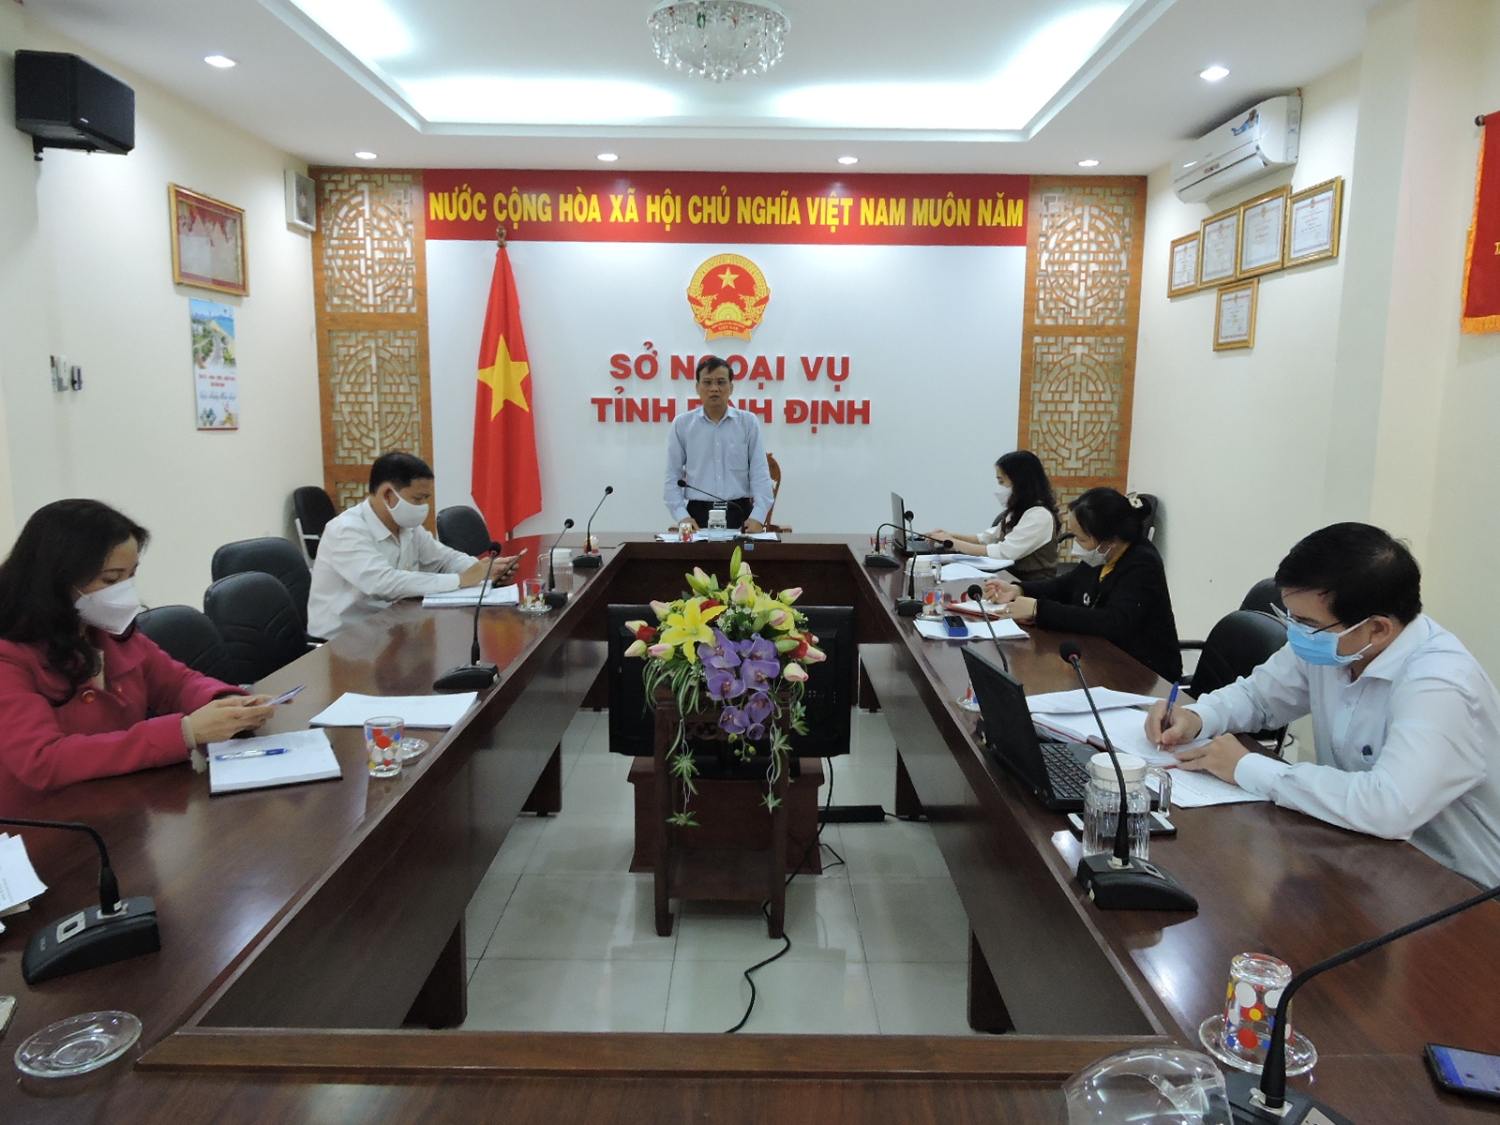 Đc Nguyễn Thái Bình, Giám đốc Sở Ngoại vụ chủ trì Hội nghị giao ban thang 1 2022